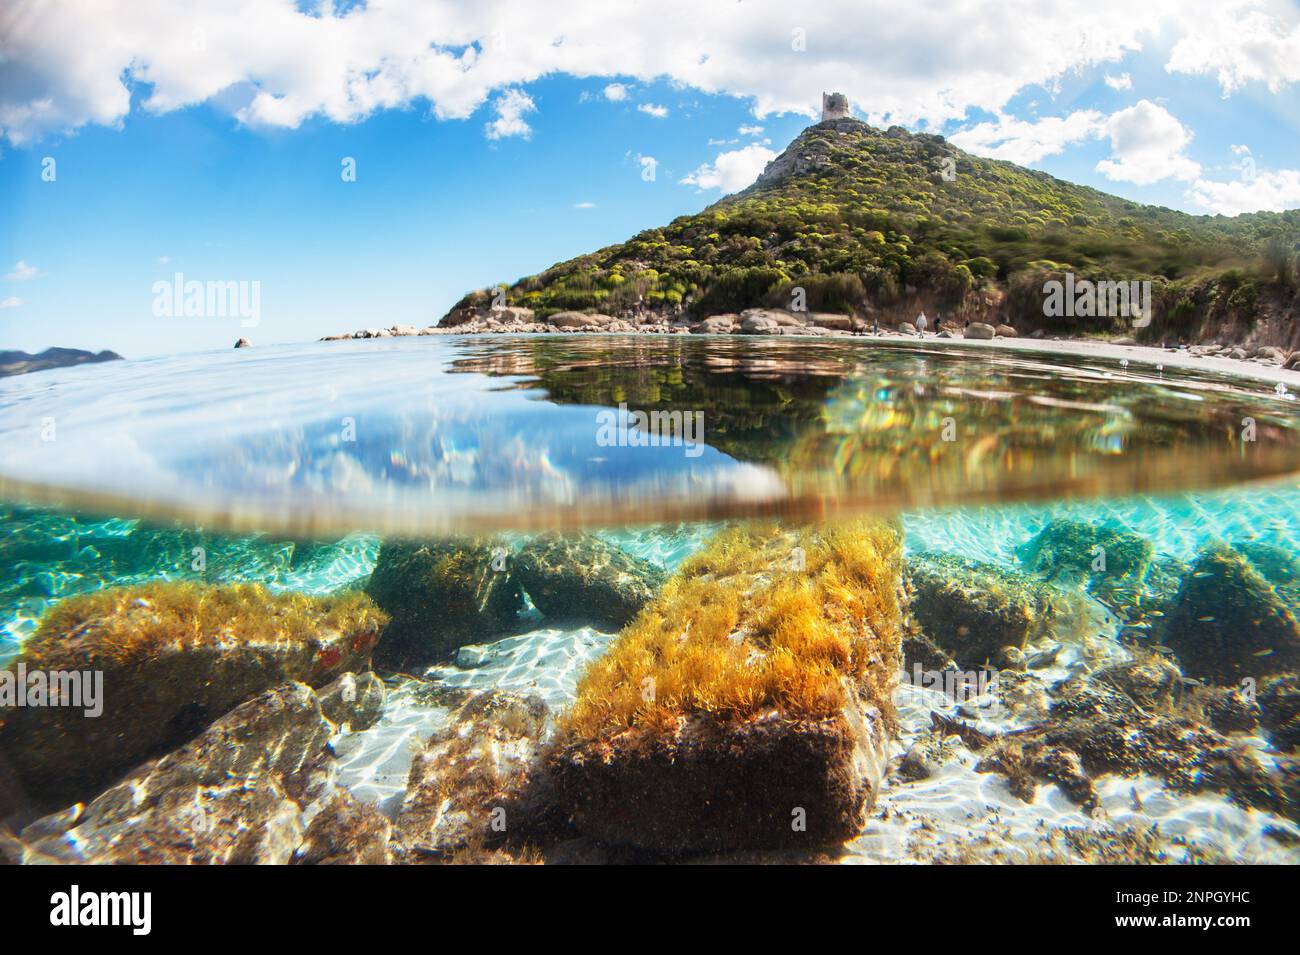 A moitié sous l'eau de Villasimius Porto Giunco, Sardaigne - mer sous-marine Turquoise Banque D'Images